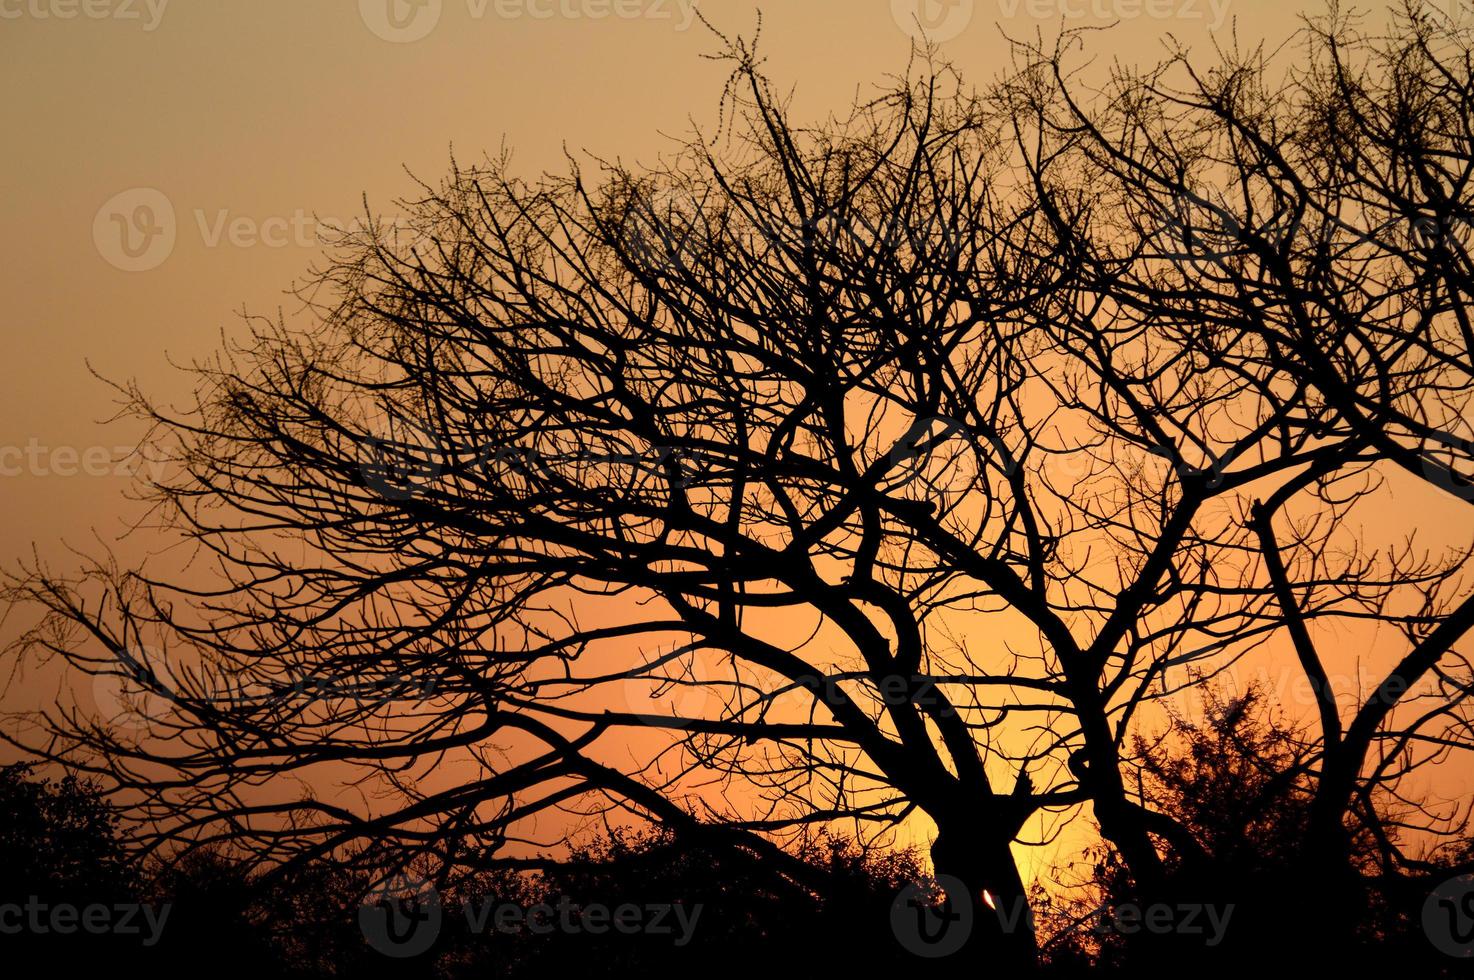 paesaggio con silhouette di alberi al tramonto. paesaggio in controluce, foto